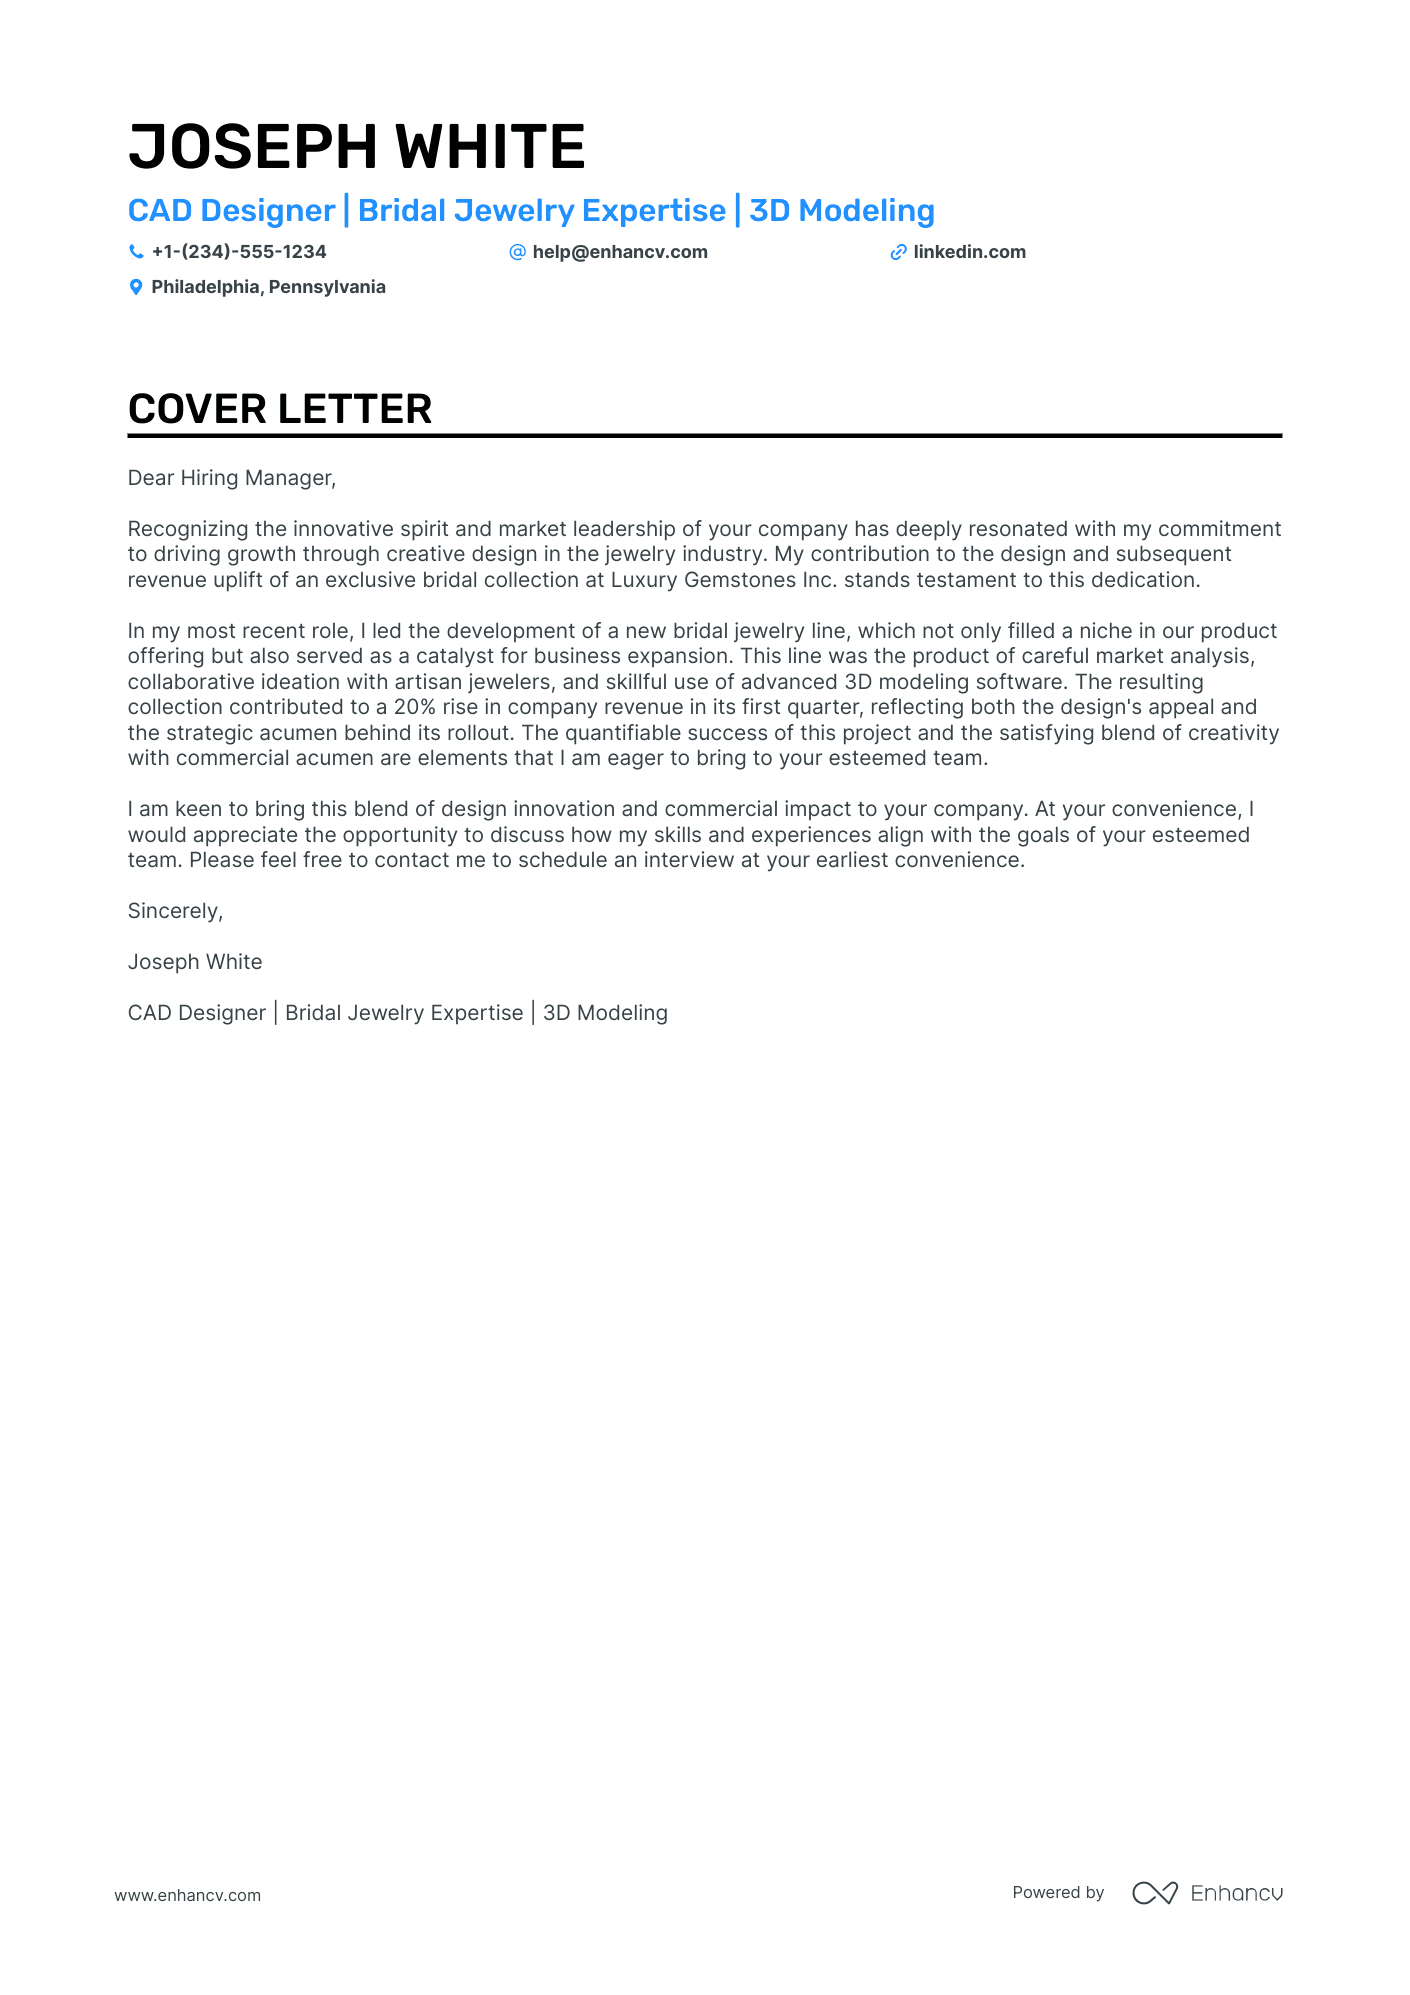 Cad Designer cover letter